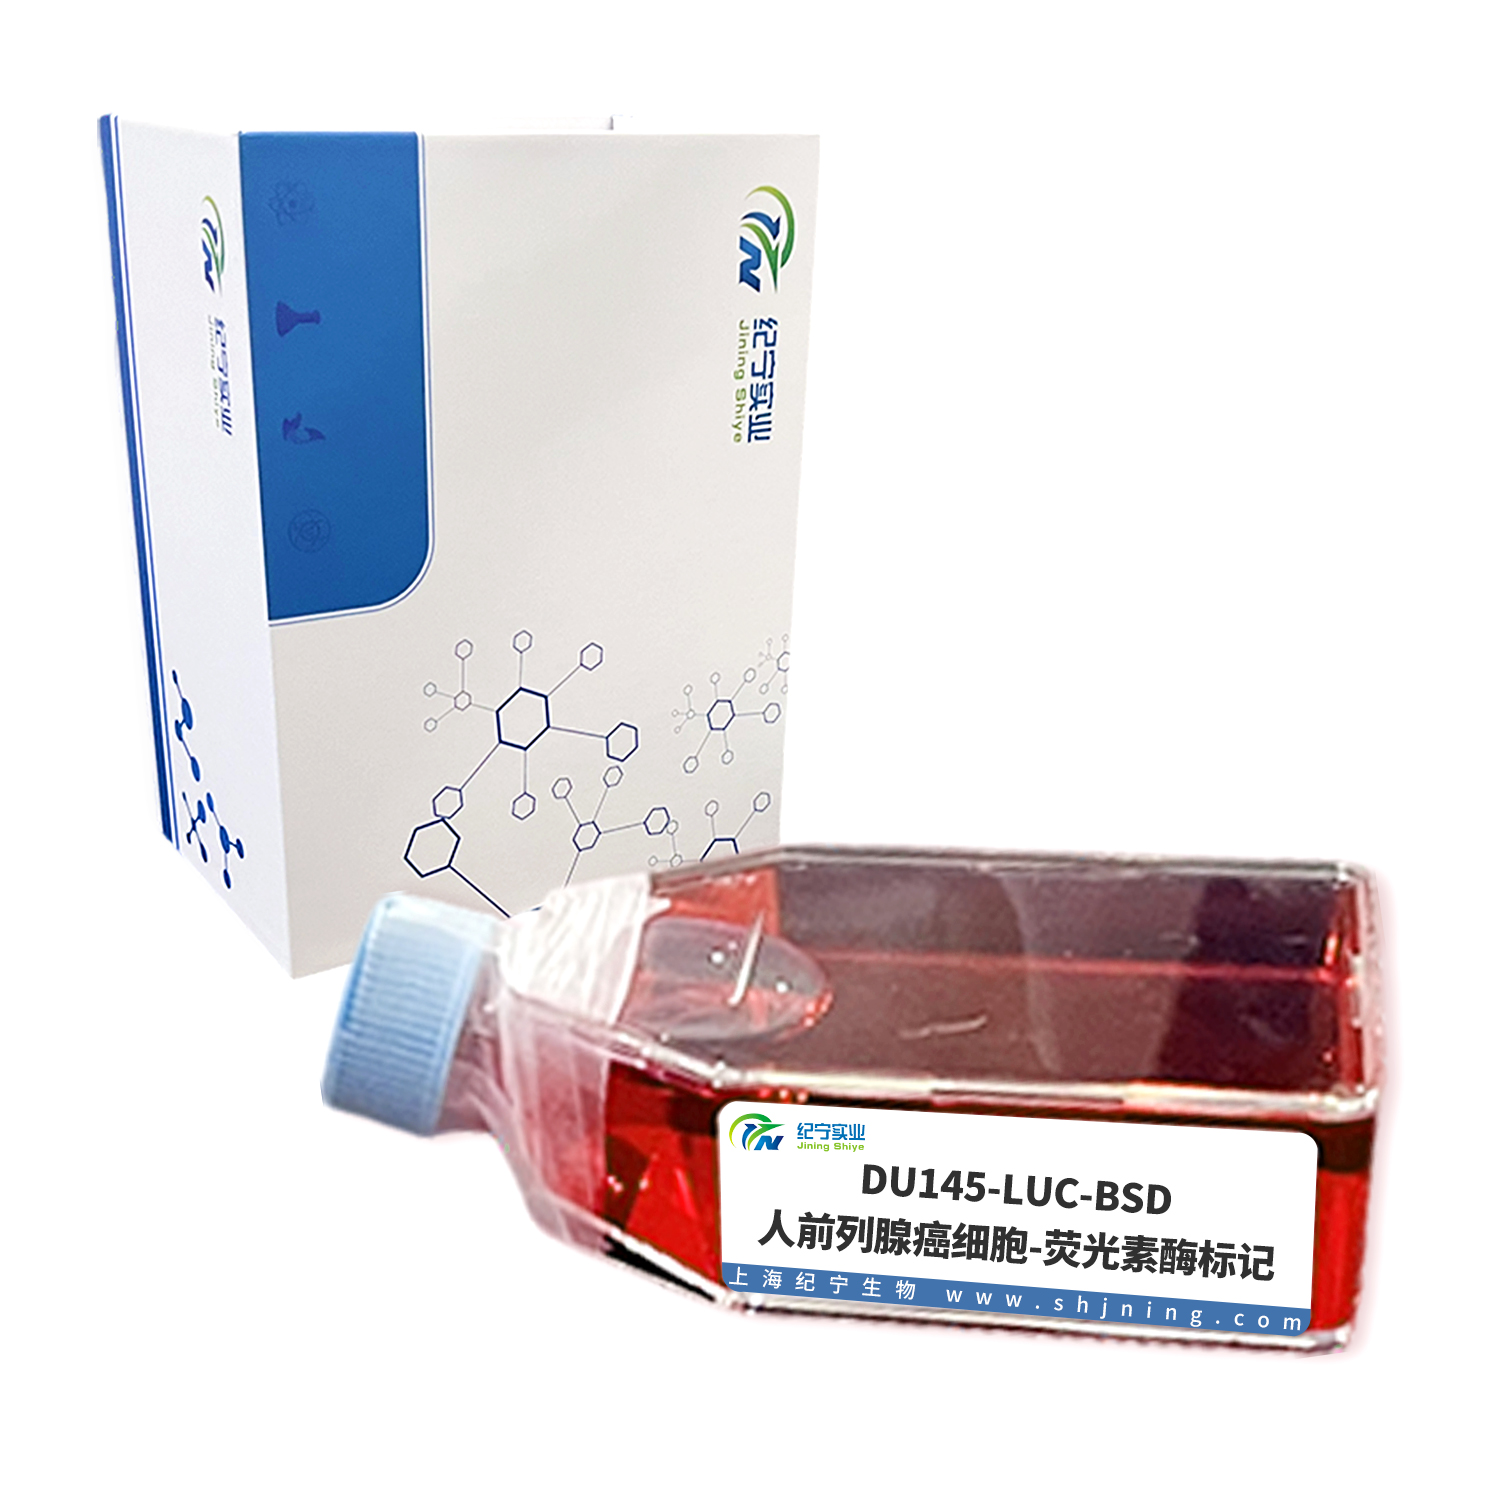 DU145-LUC-BSD /人前列腺癌细胞-荧光素酶标记